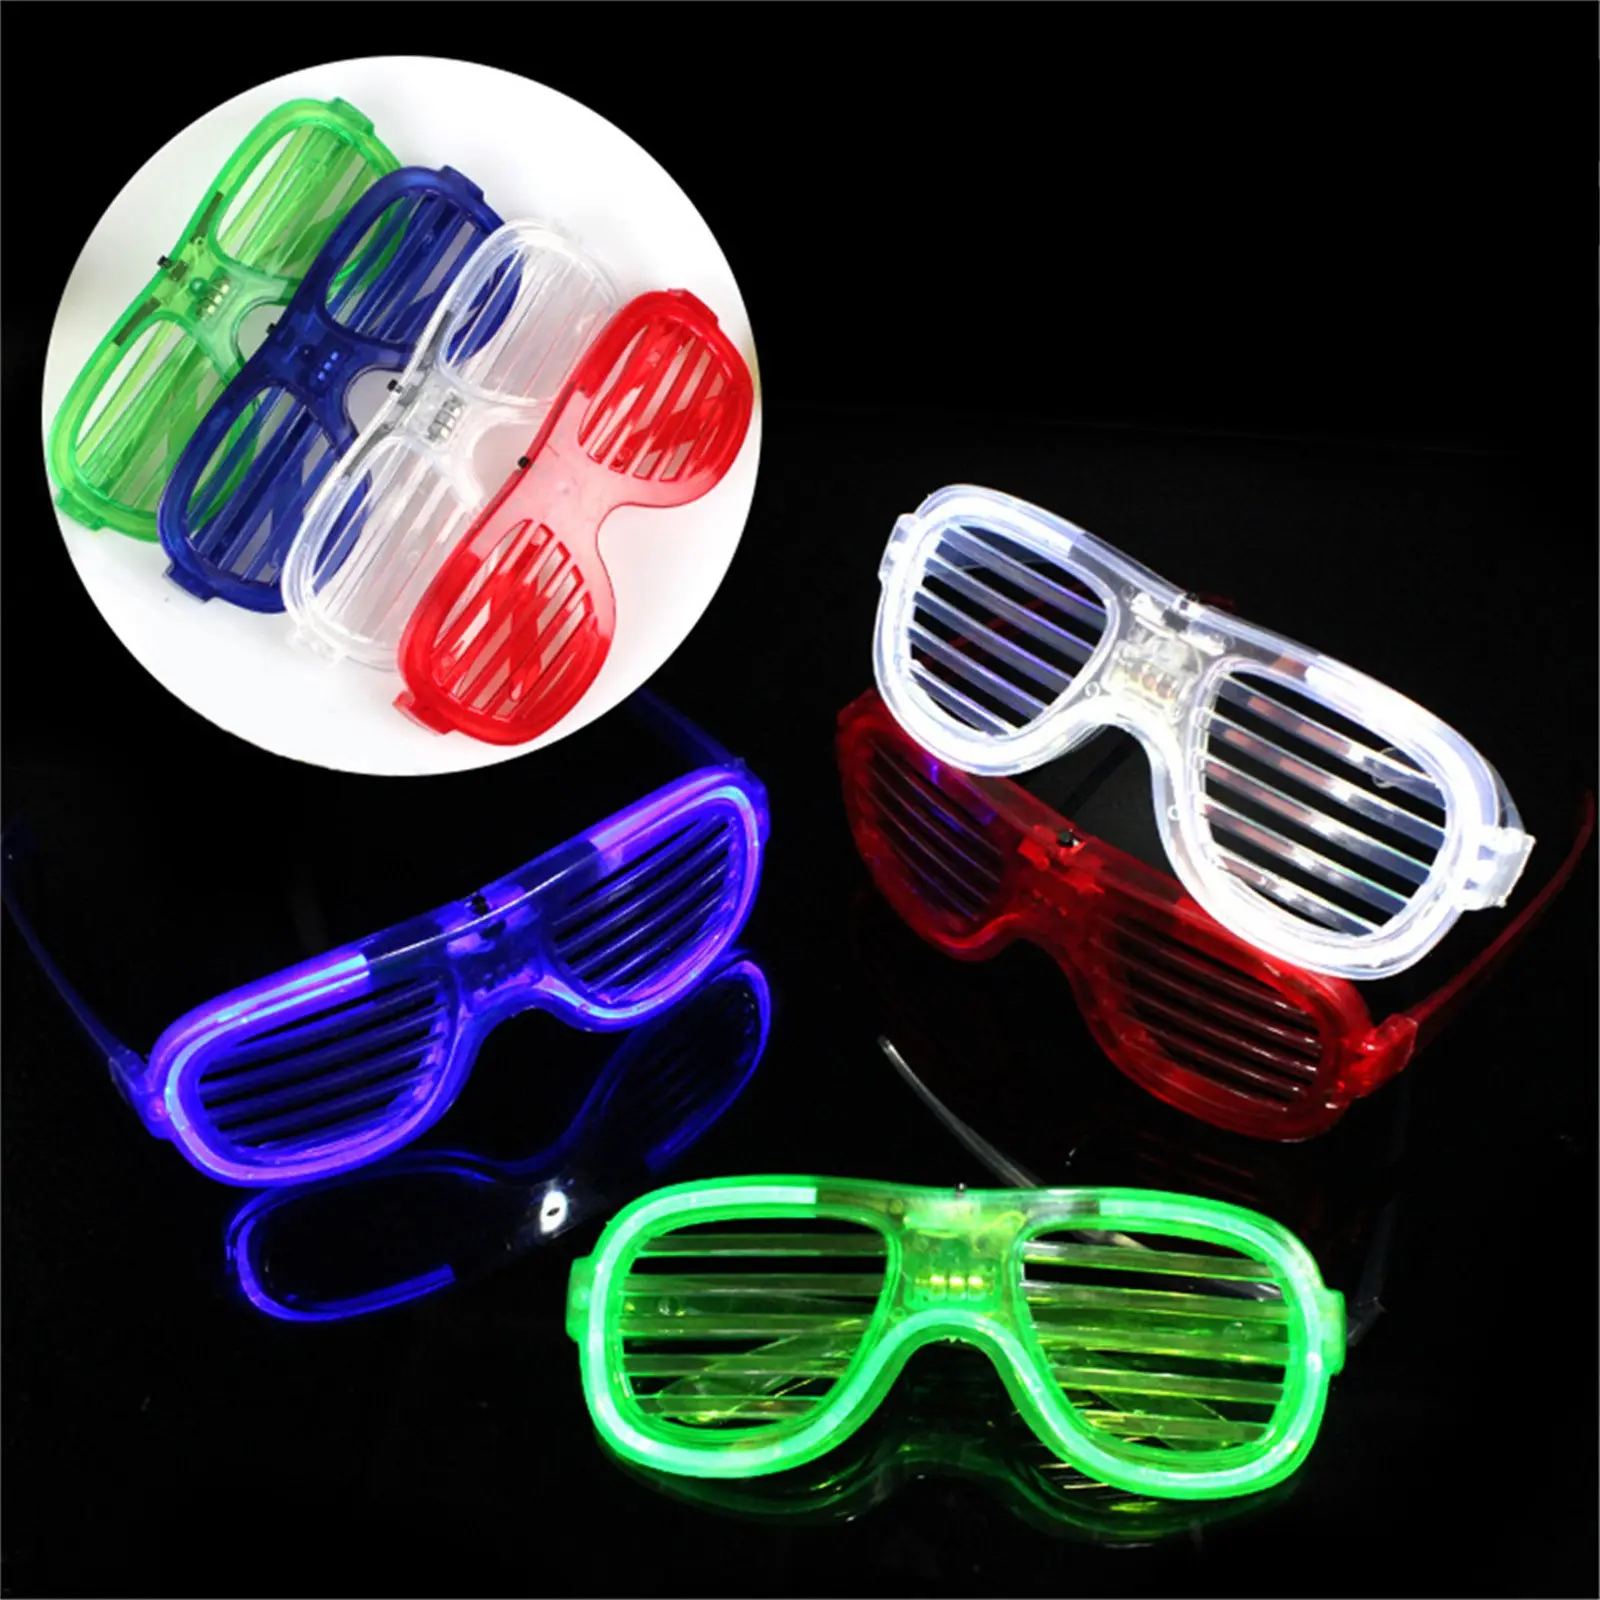 Neues Produkt leuchtet im Dunkeln auf LED-Schale Neon Party-Favoriten Sonnenbrille für Kinder Erwachsene Geburtstag Weihnachten